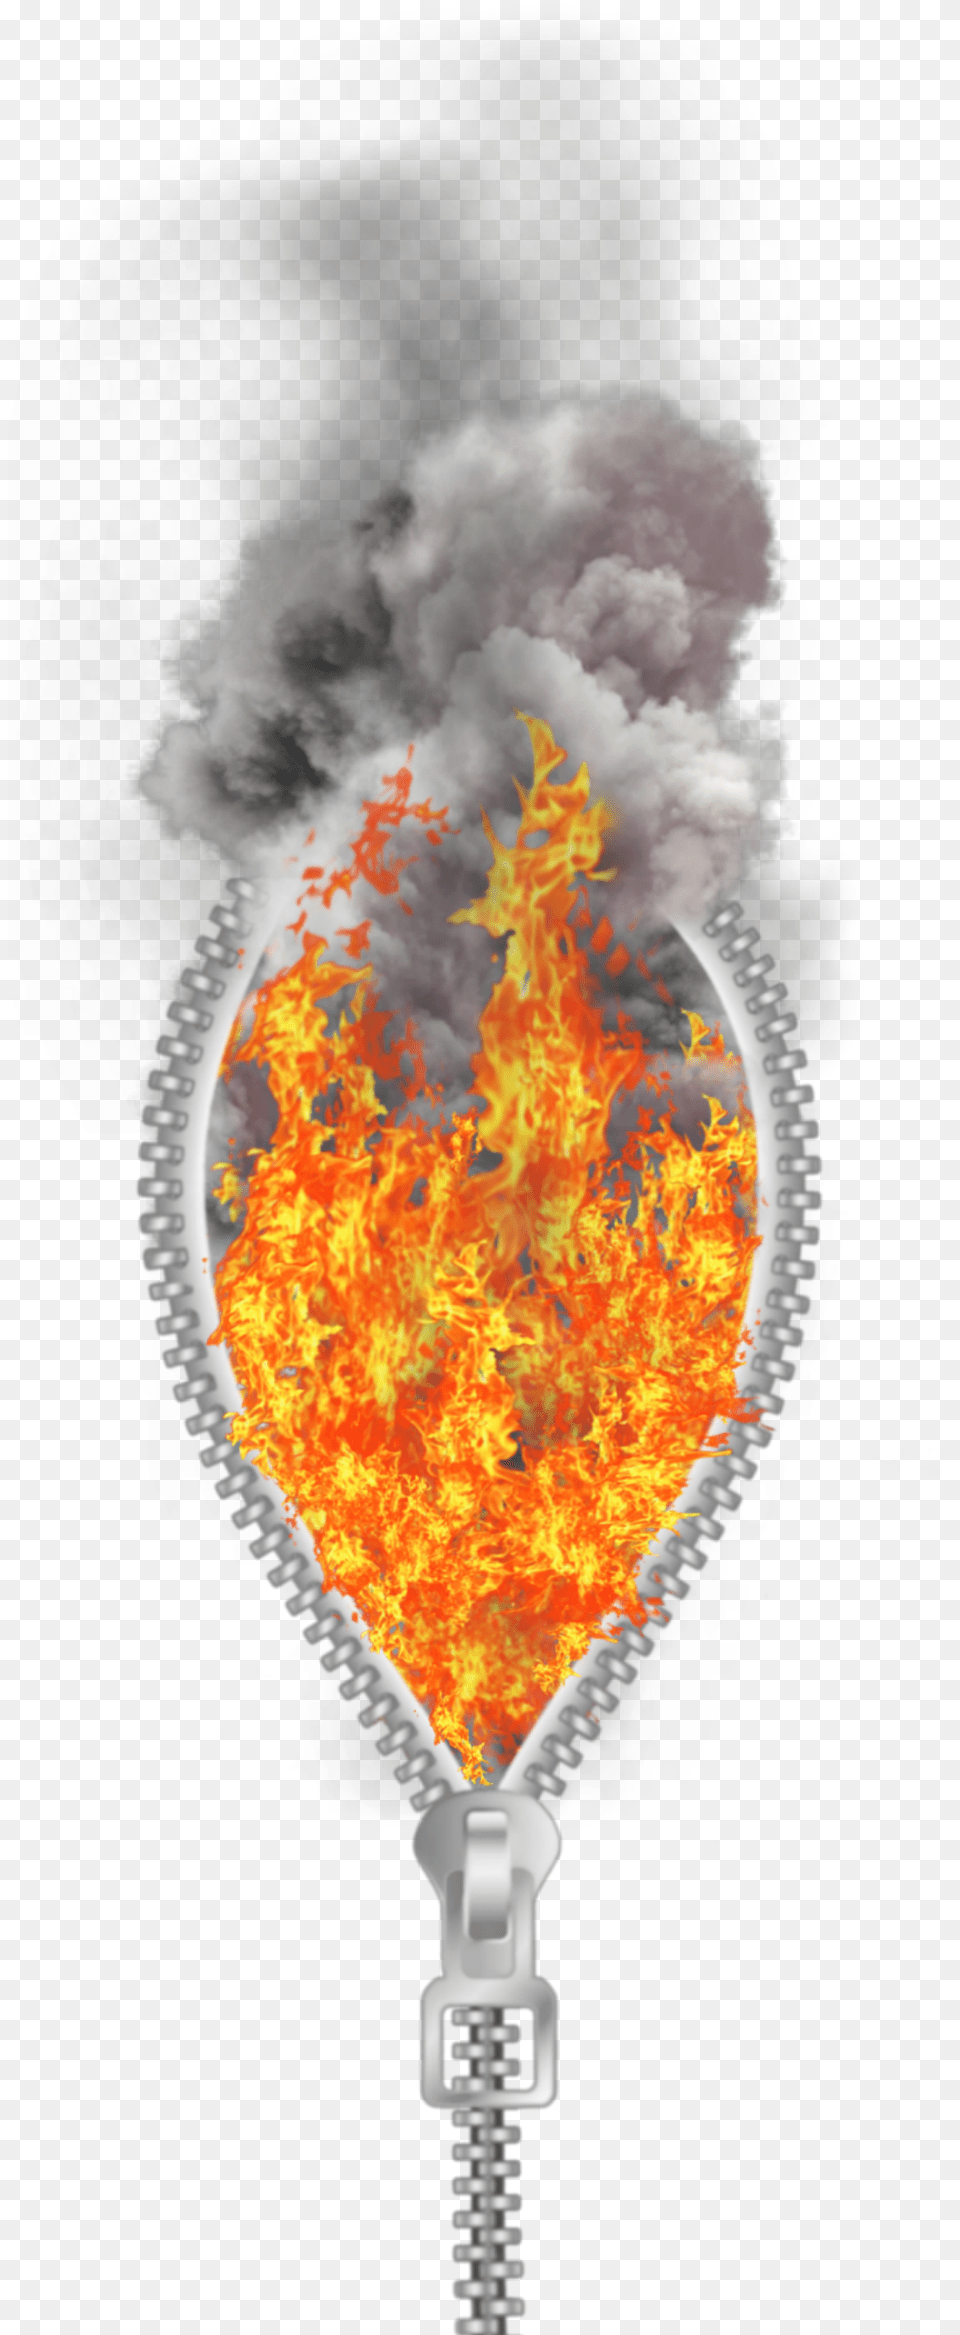 Zipper Fire Burning Flames Smoke Alienart Alienized Illustration, Light Free Png Download